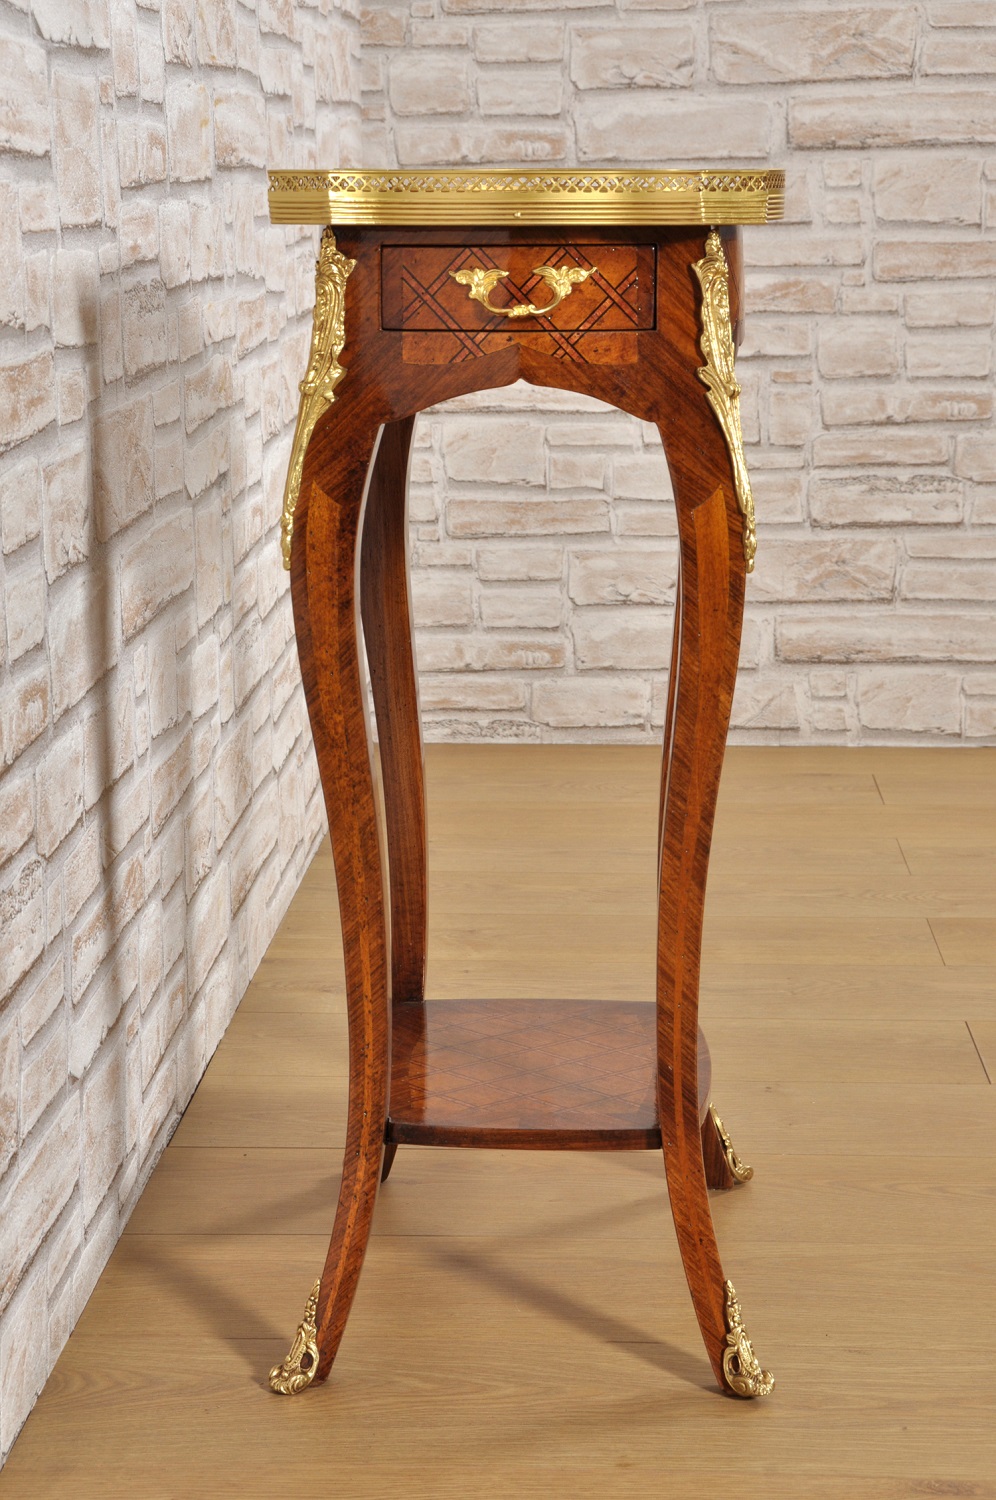 il brand di lusso italiano Vangelista mobili costruisce importanti tavolini intarsiati francesi con bronzi cesellati a mano e le gambe alte e mosse